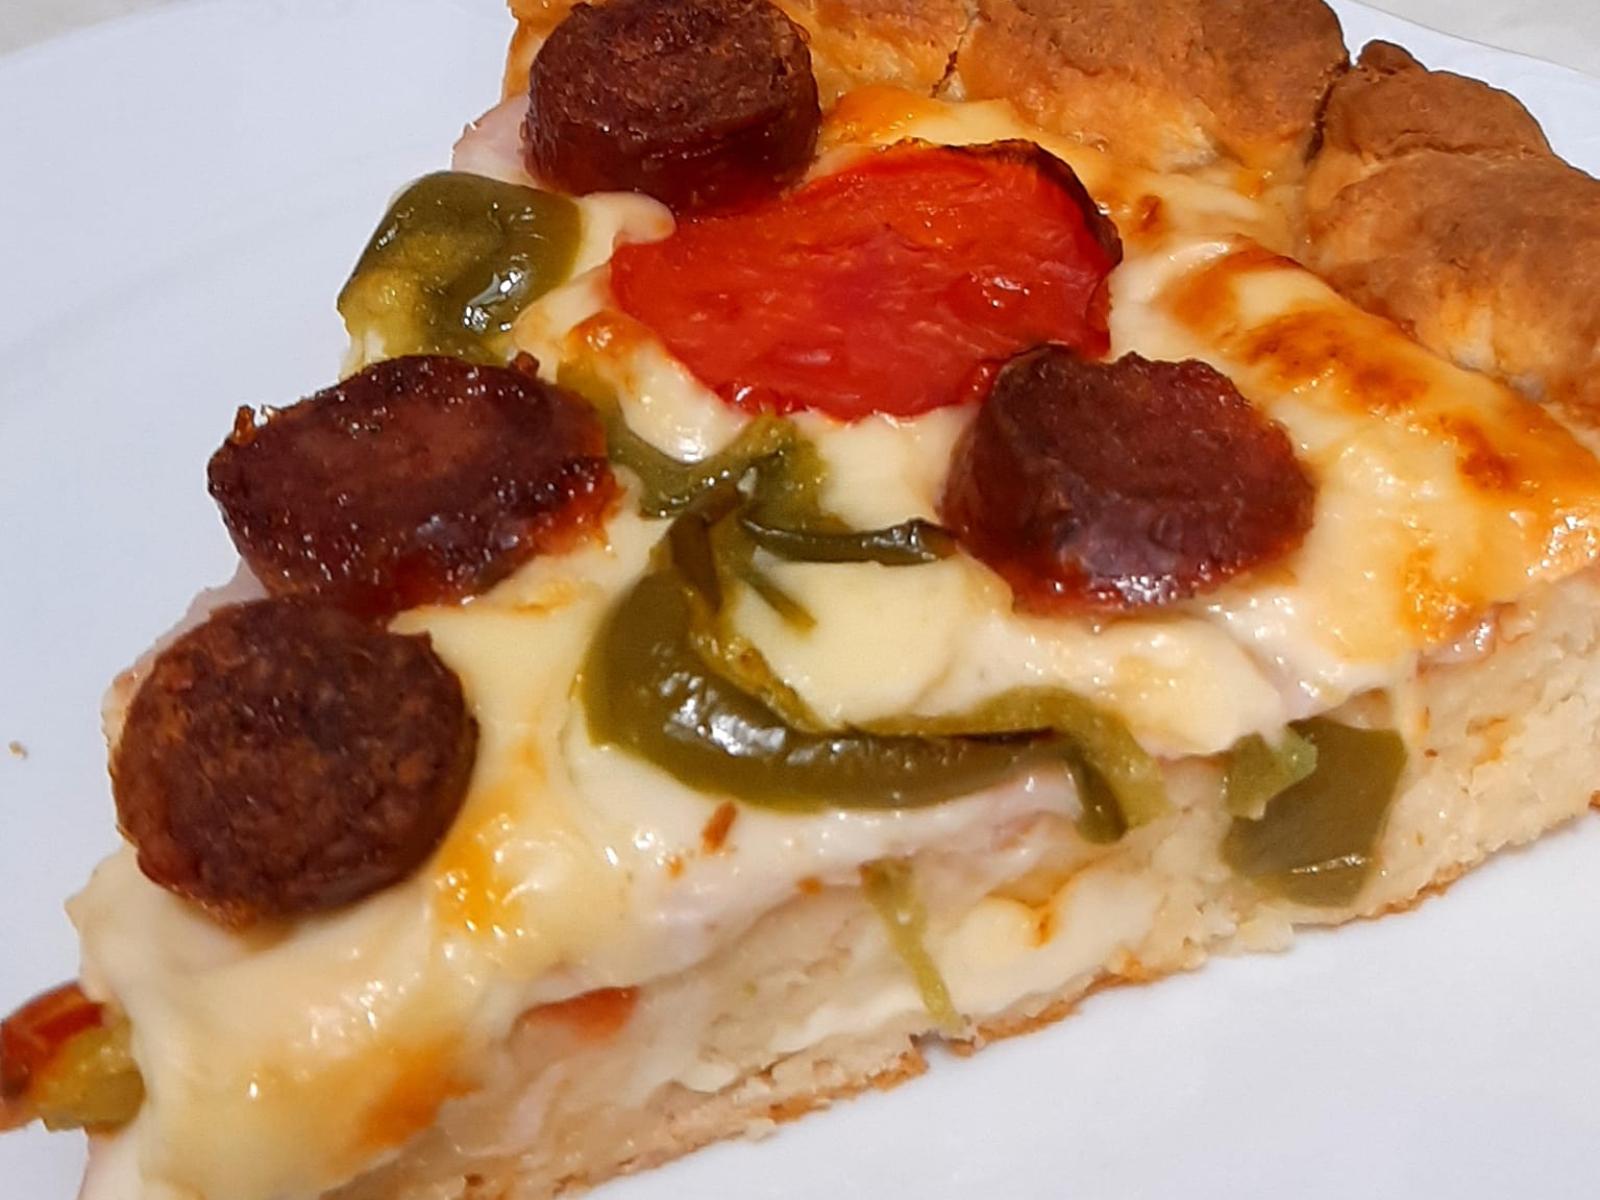 πίτσα-με-λουκάνικο-συνταγή-